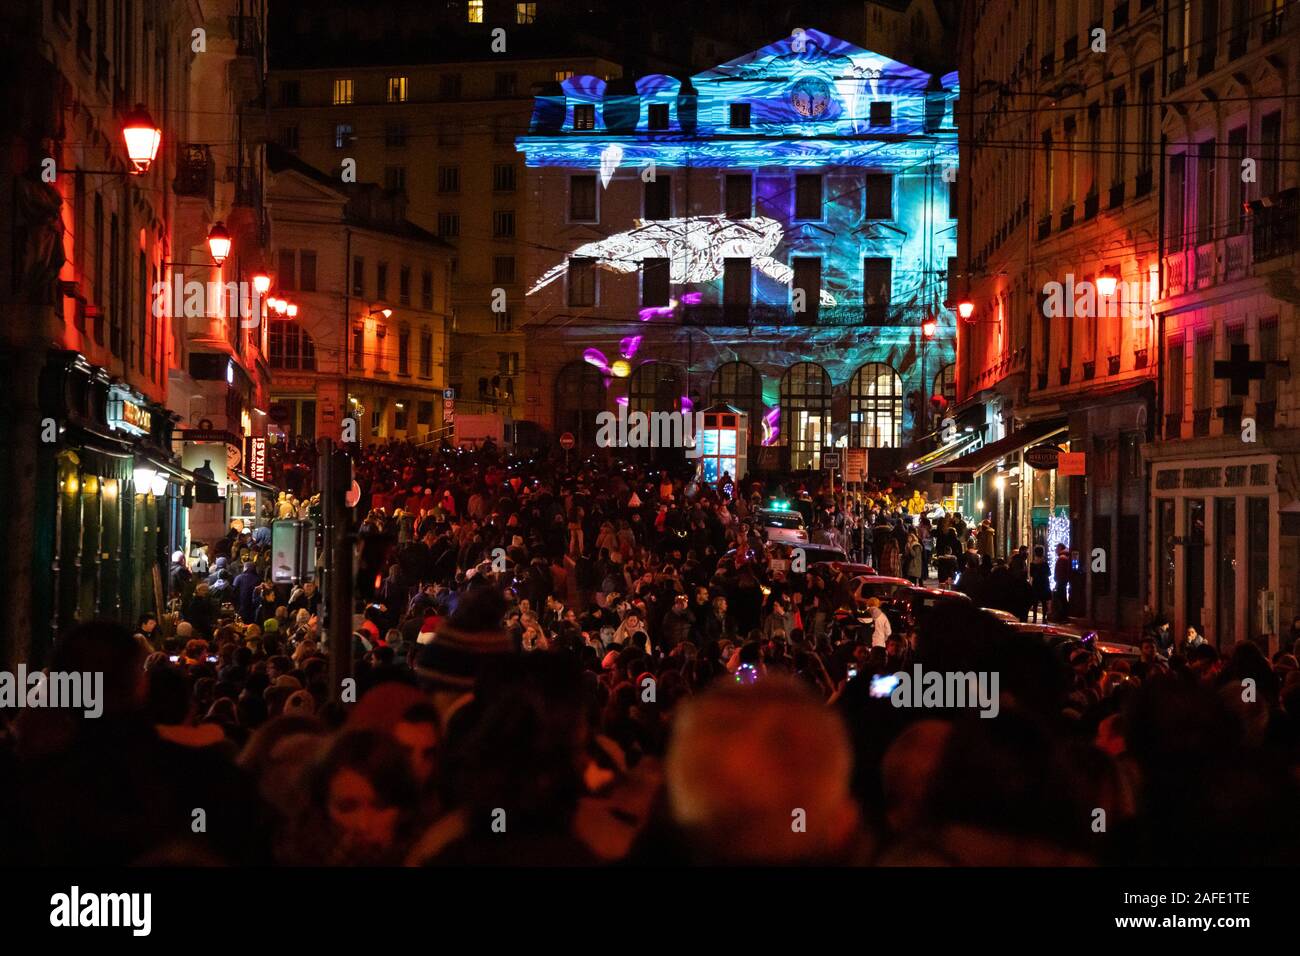 Fête des Lumières - Ville de Lyon - Jährliches Festival der Lichter in Lyon, Frankreich - Fete des Lumières - Dezember 2019 Stockfoto